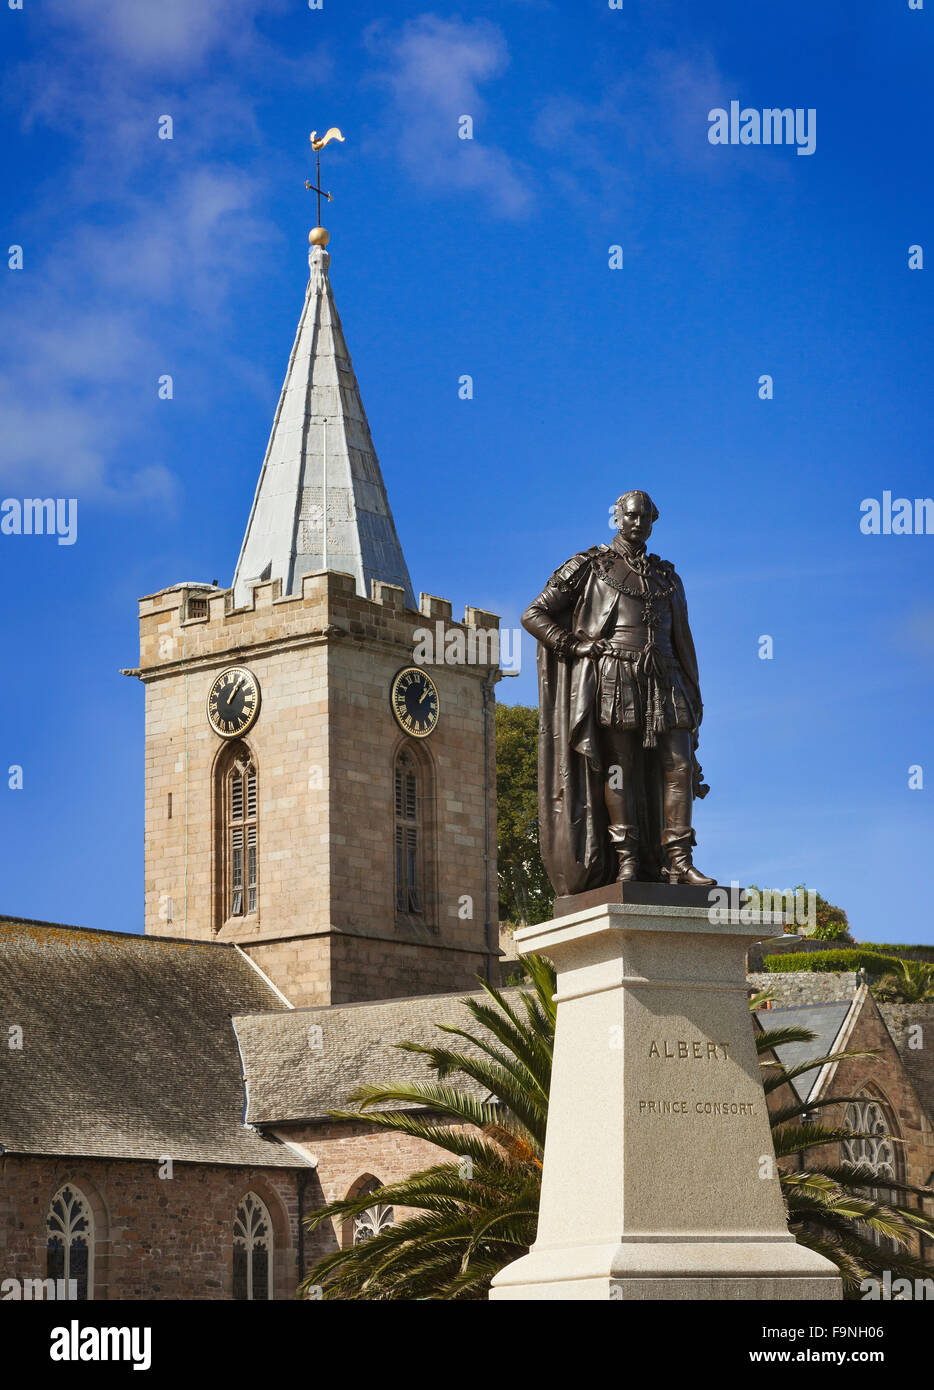 Statue de Prince Albert, derrière l'église de la ville, St Peter Port Guernsey, Channel isles. Le bronze sur un piédestal de granit. Banque D'Images